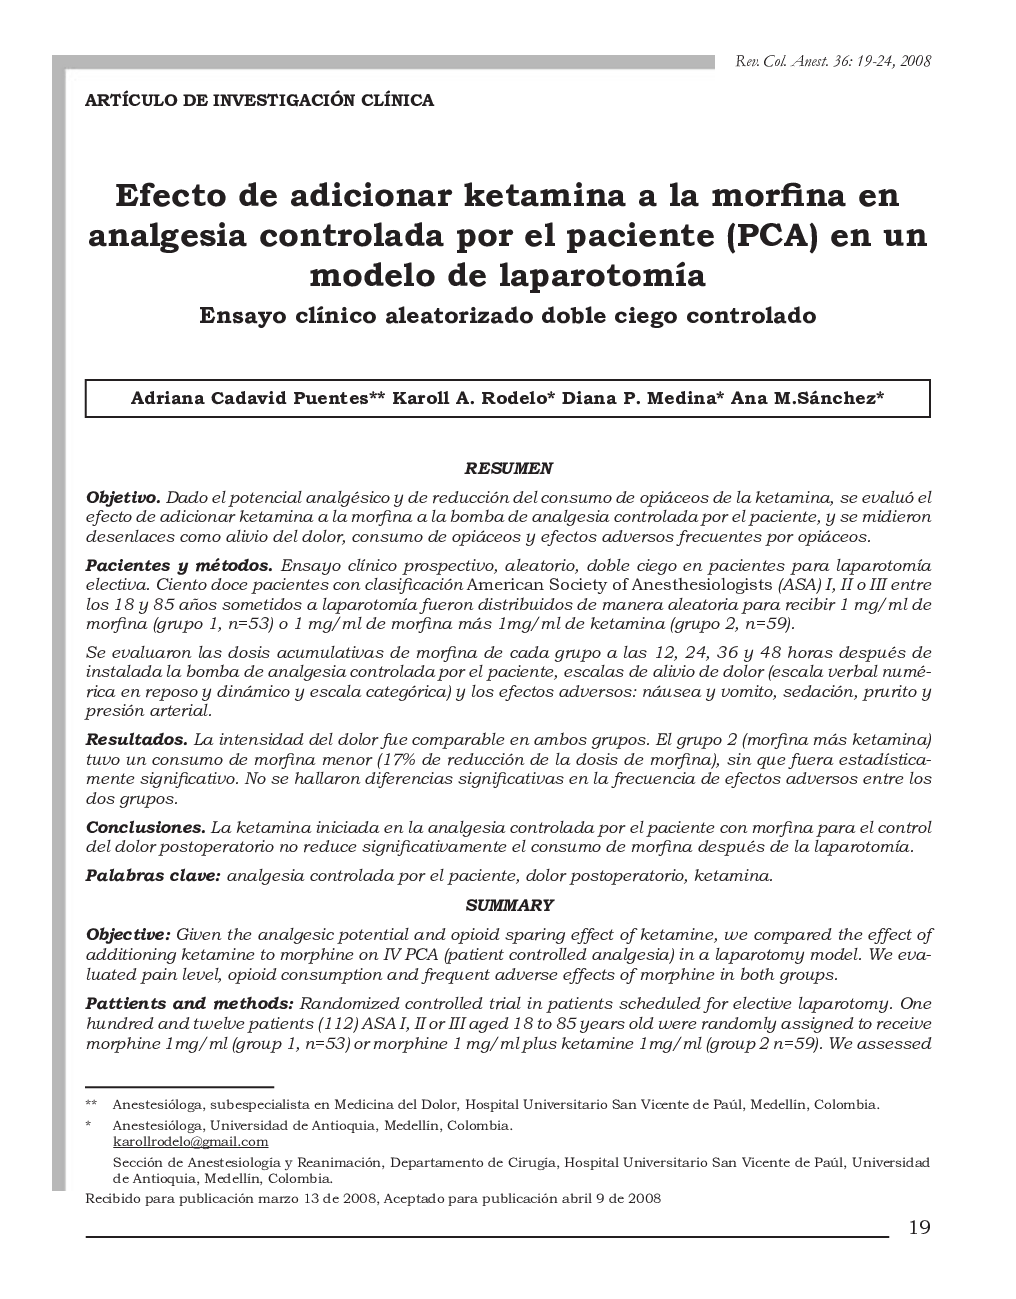 Efecto de adicionar ketamina a la morfina en analgesia controlada por el paciente (PCA) en un modelo de laparotomía: Ensayo clínico aleatorizado doble ciego controlado 